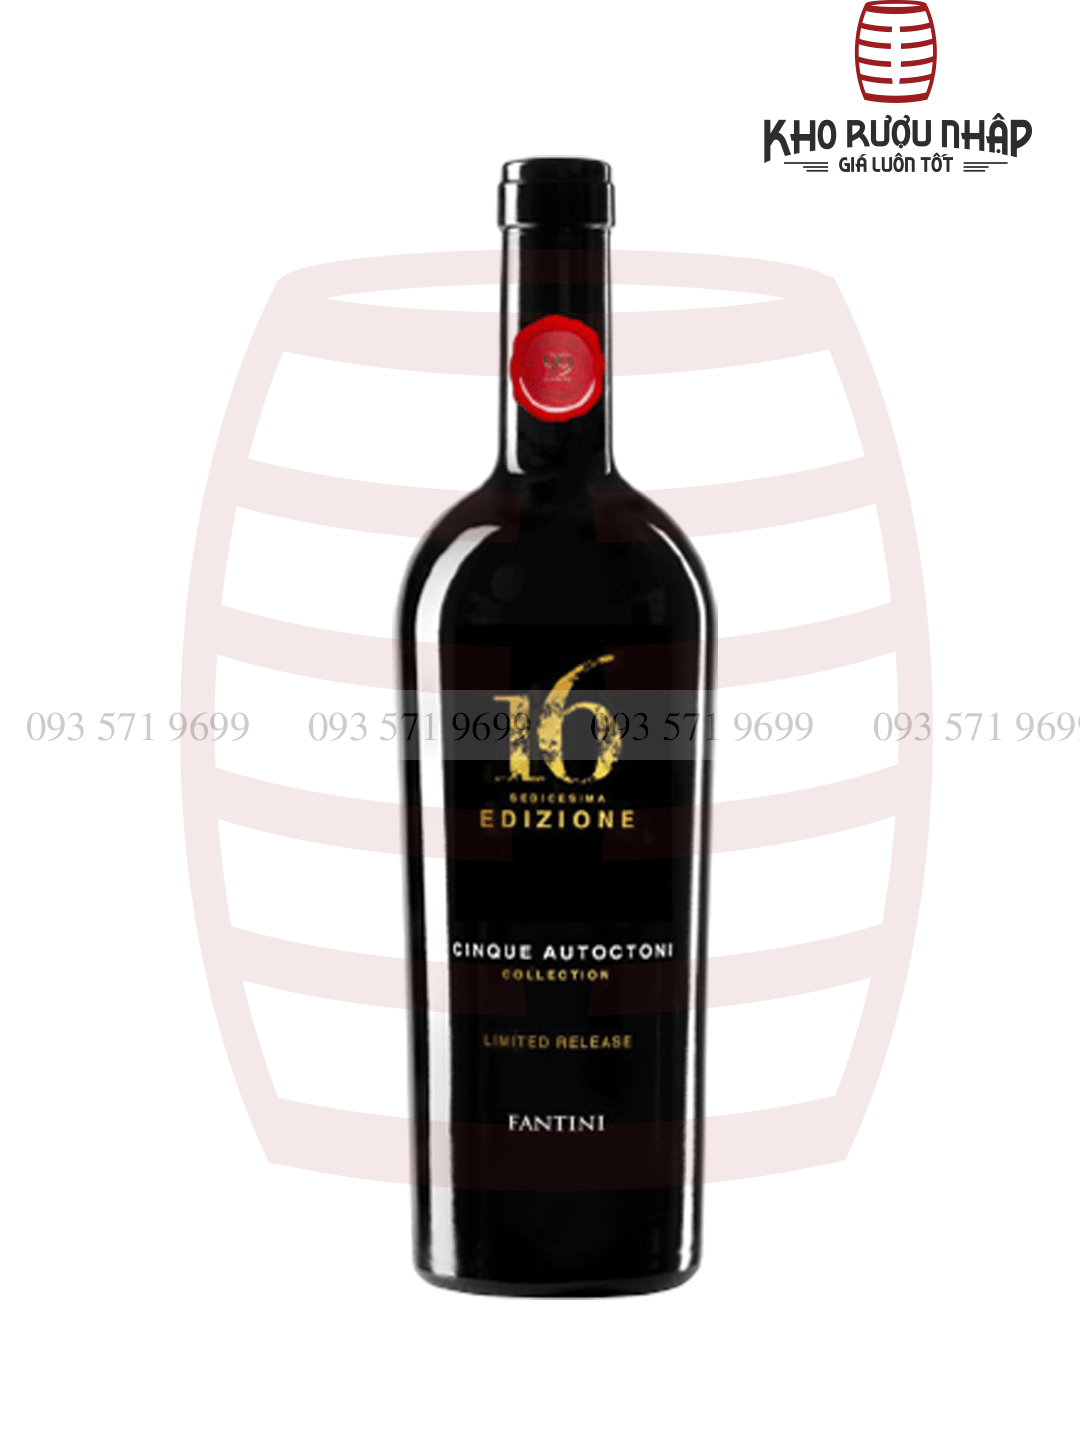 Rượu Vang Ý 16 Edizione Limited Cao Cấp – MH-16